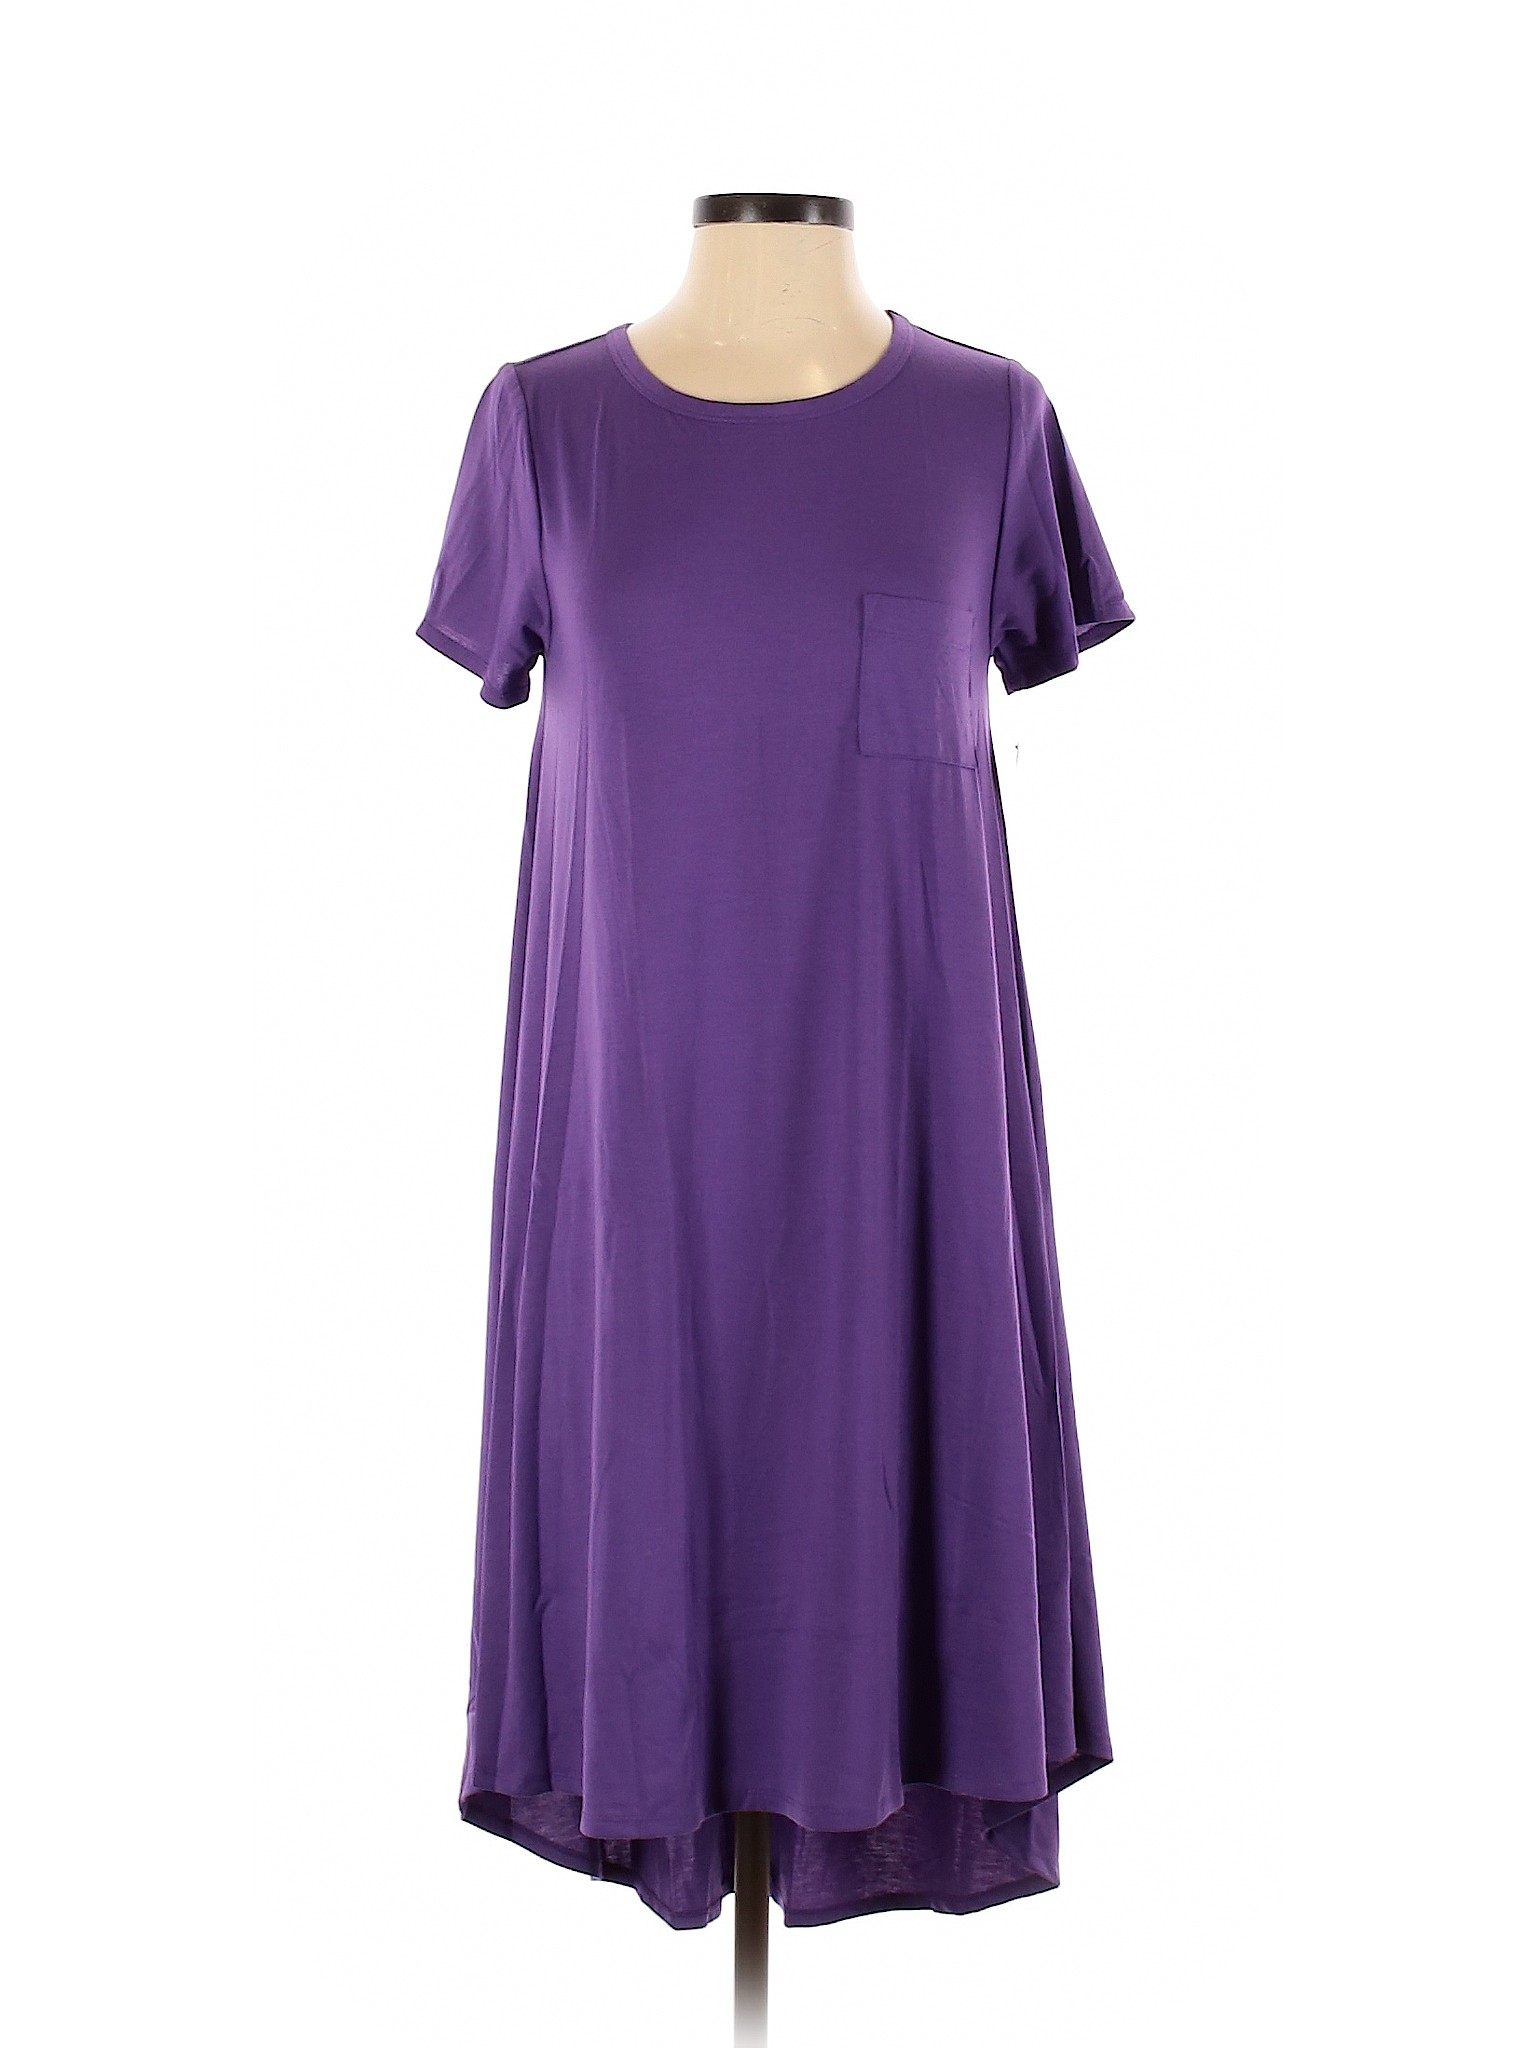 NWT Lularoe Women Purple Casual Dress XS | eBay